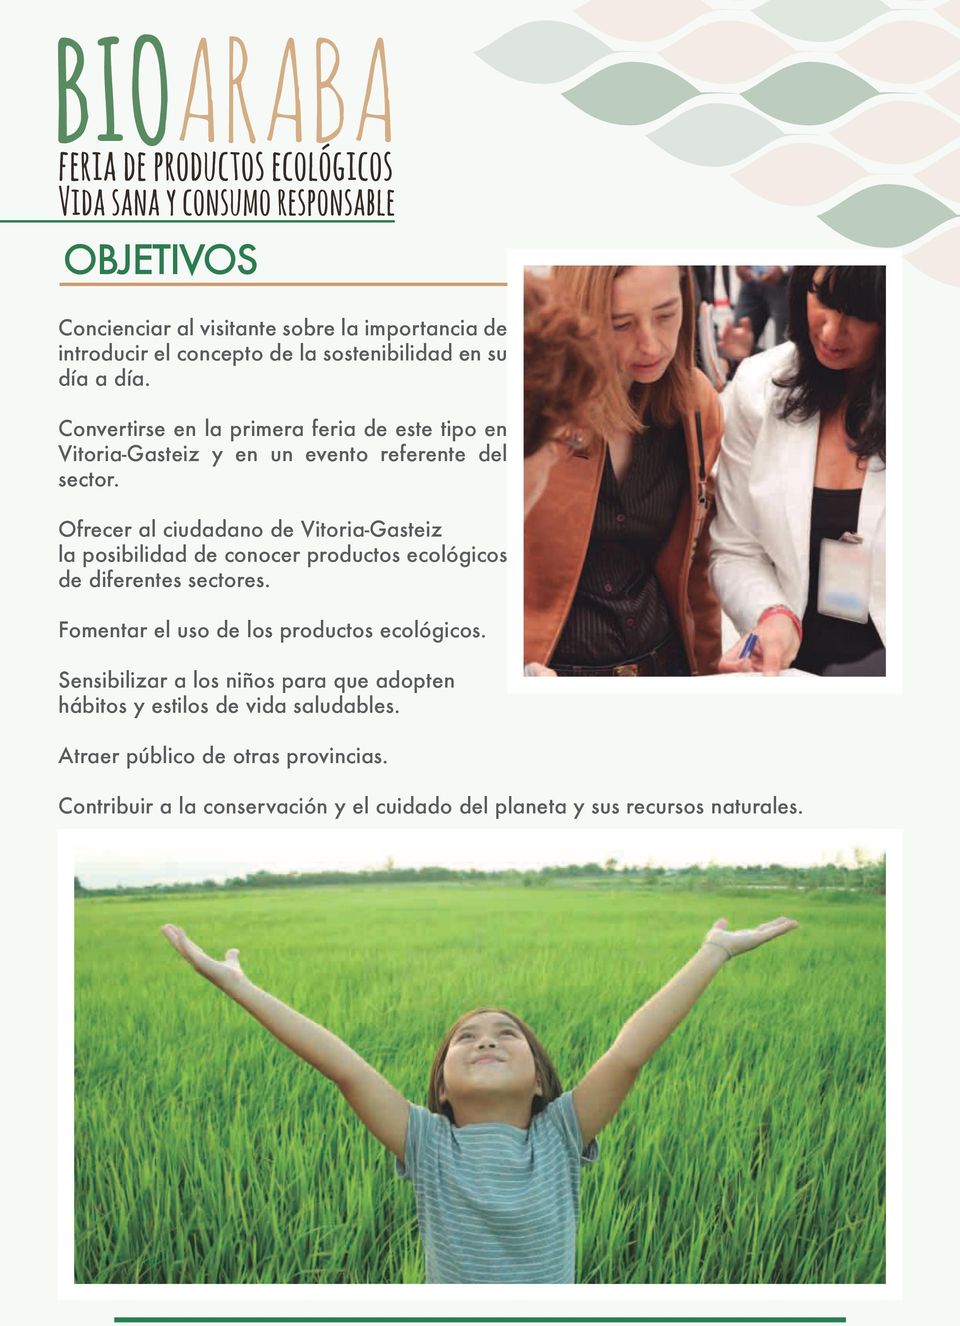 Ofrecer al ciudadano de Vitoria-Gasteiz la posibilidad de conocer productos ecológicos de diferentes sectores.